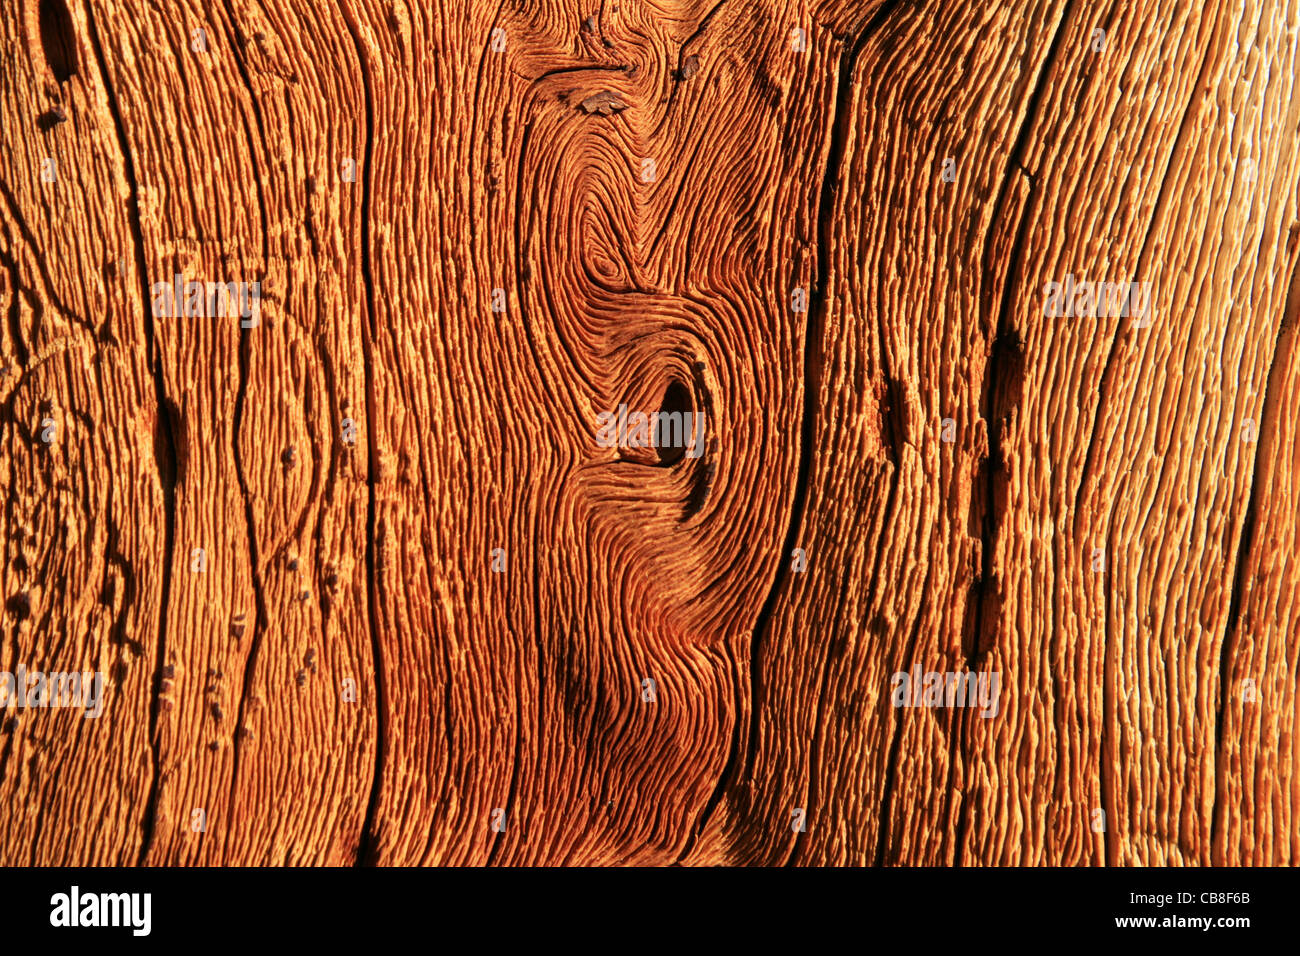 Détail de bois de pin tordu surmonté d'un arbre de pin alpin Banque D'Images